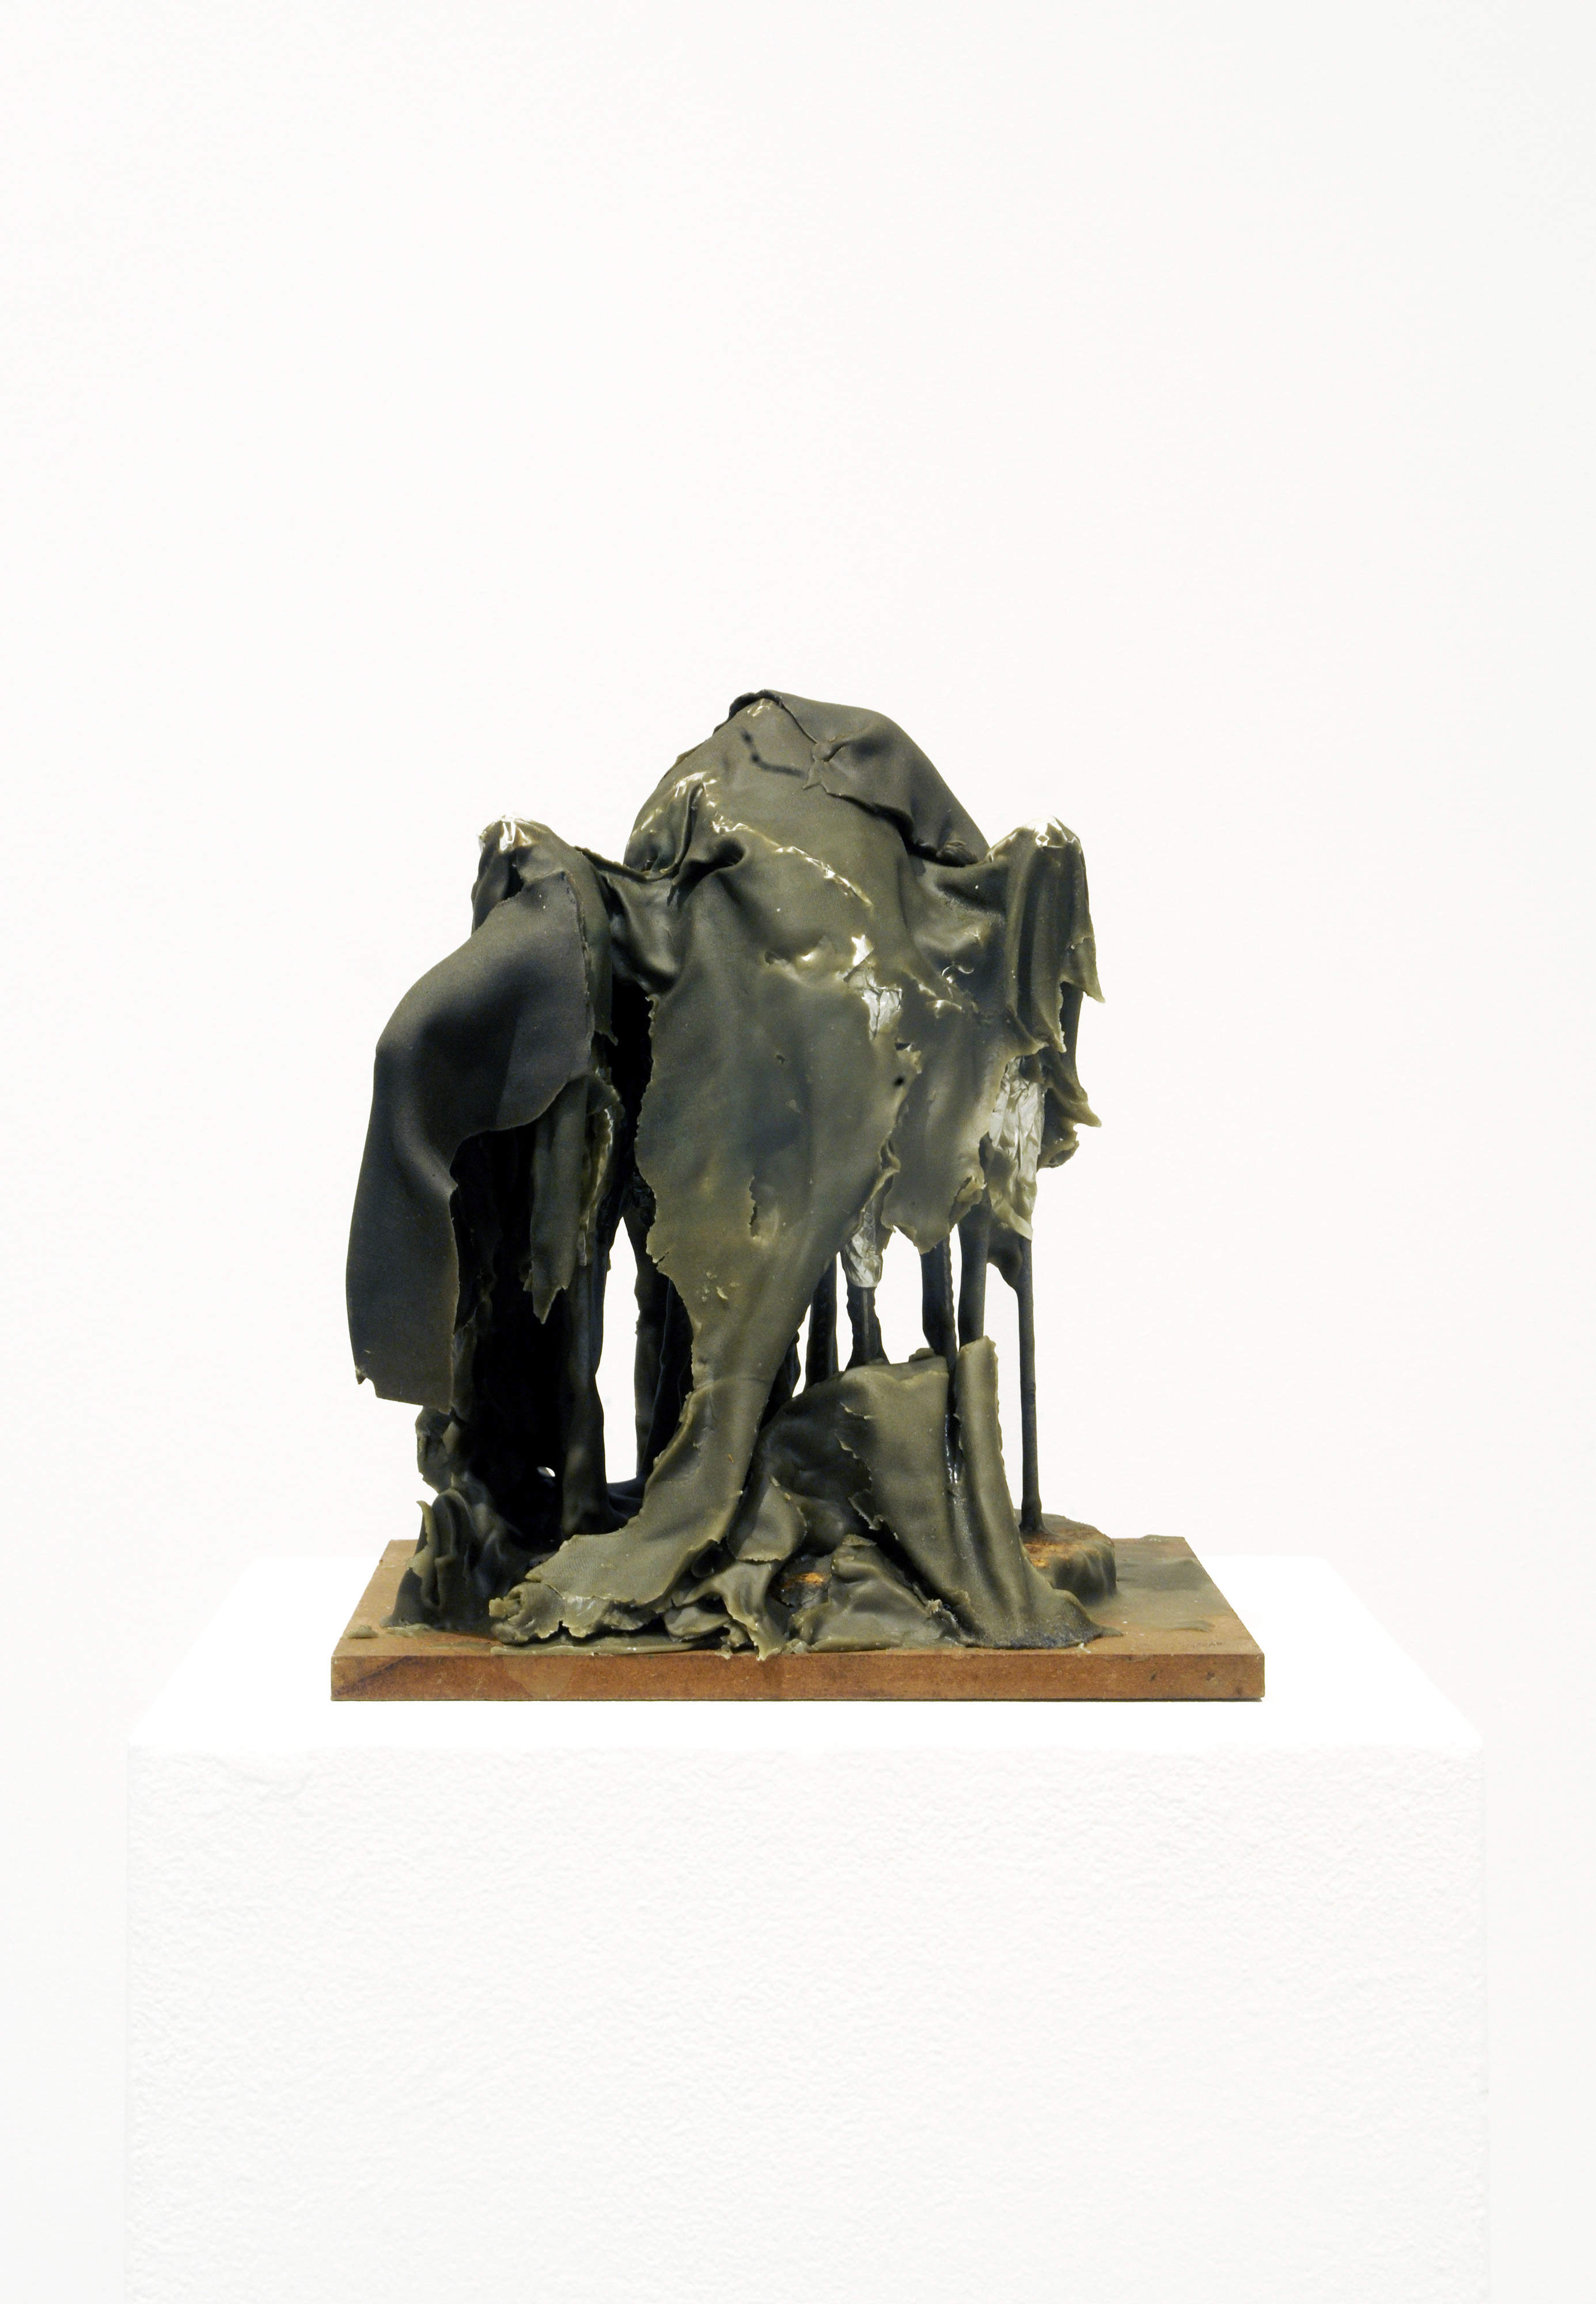 About Sculpture, Rolando Anselmi